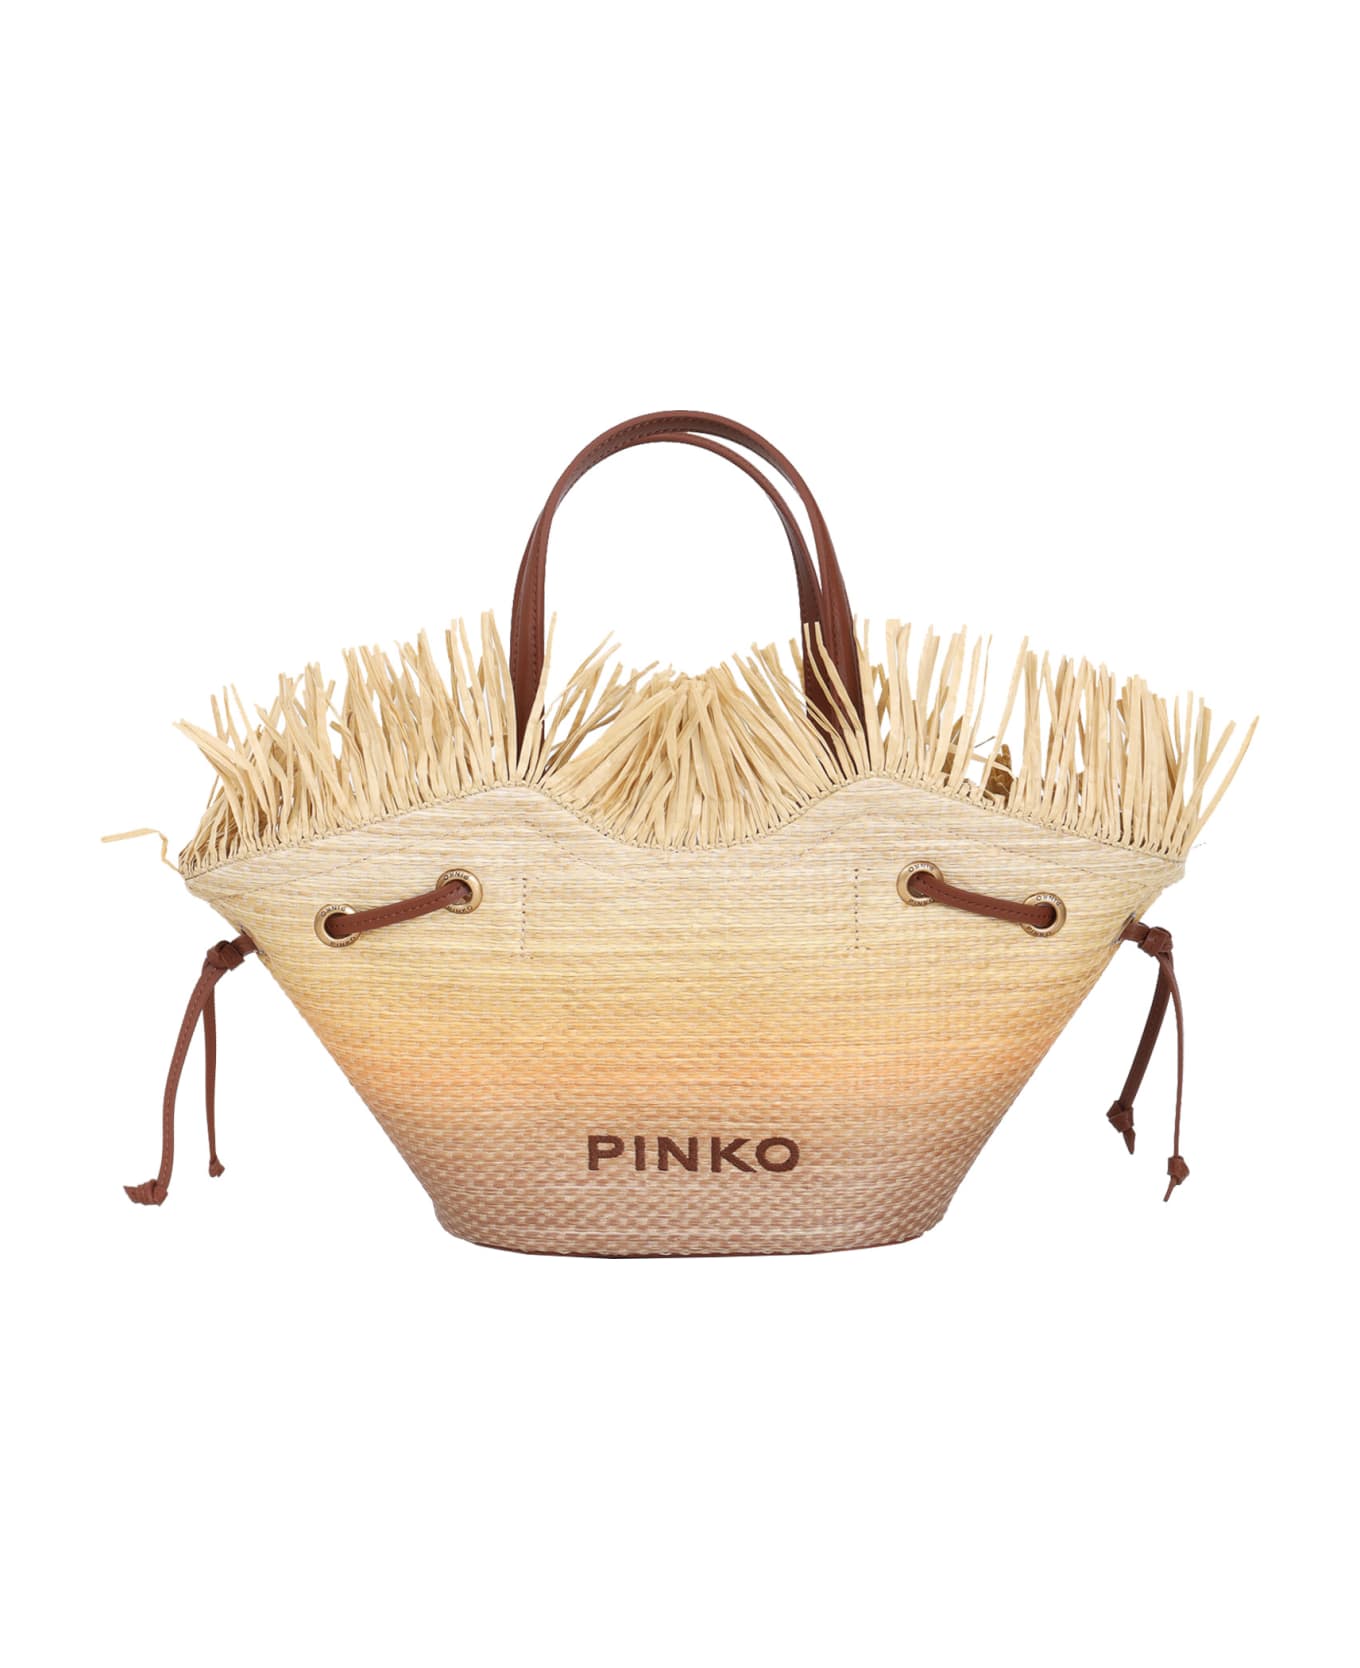 Pinko Handbag - Brown